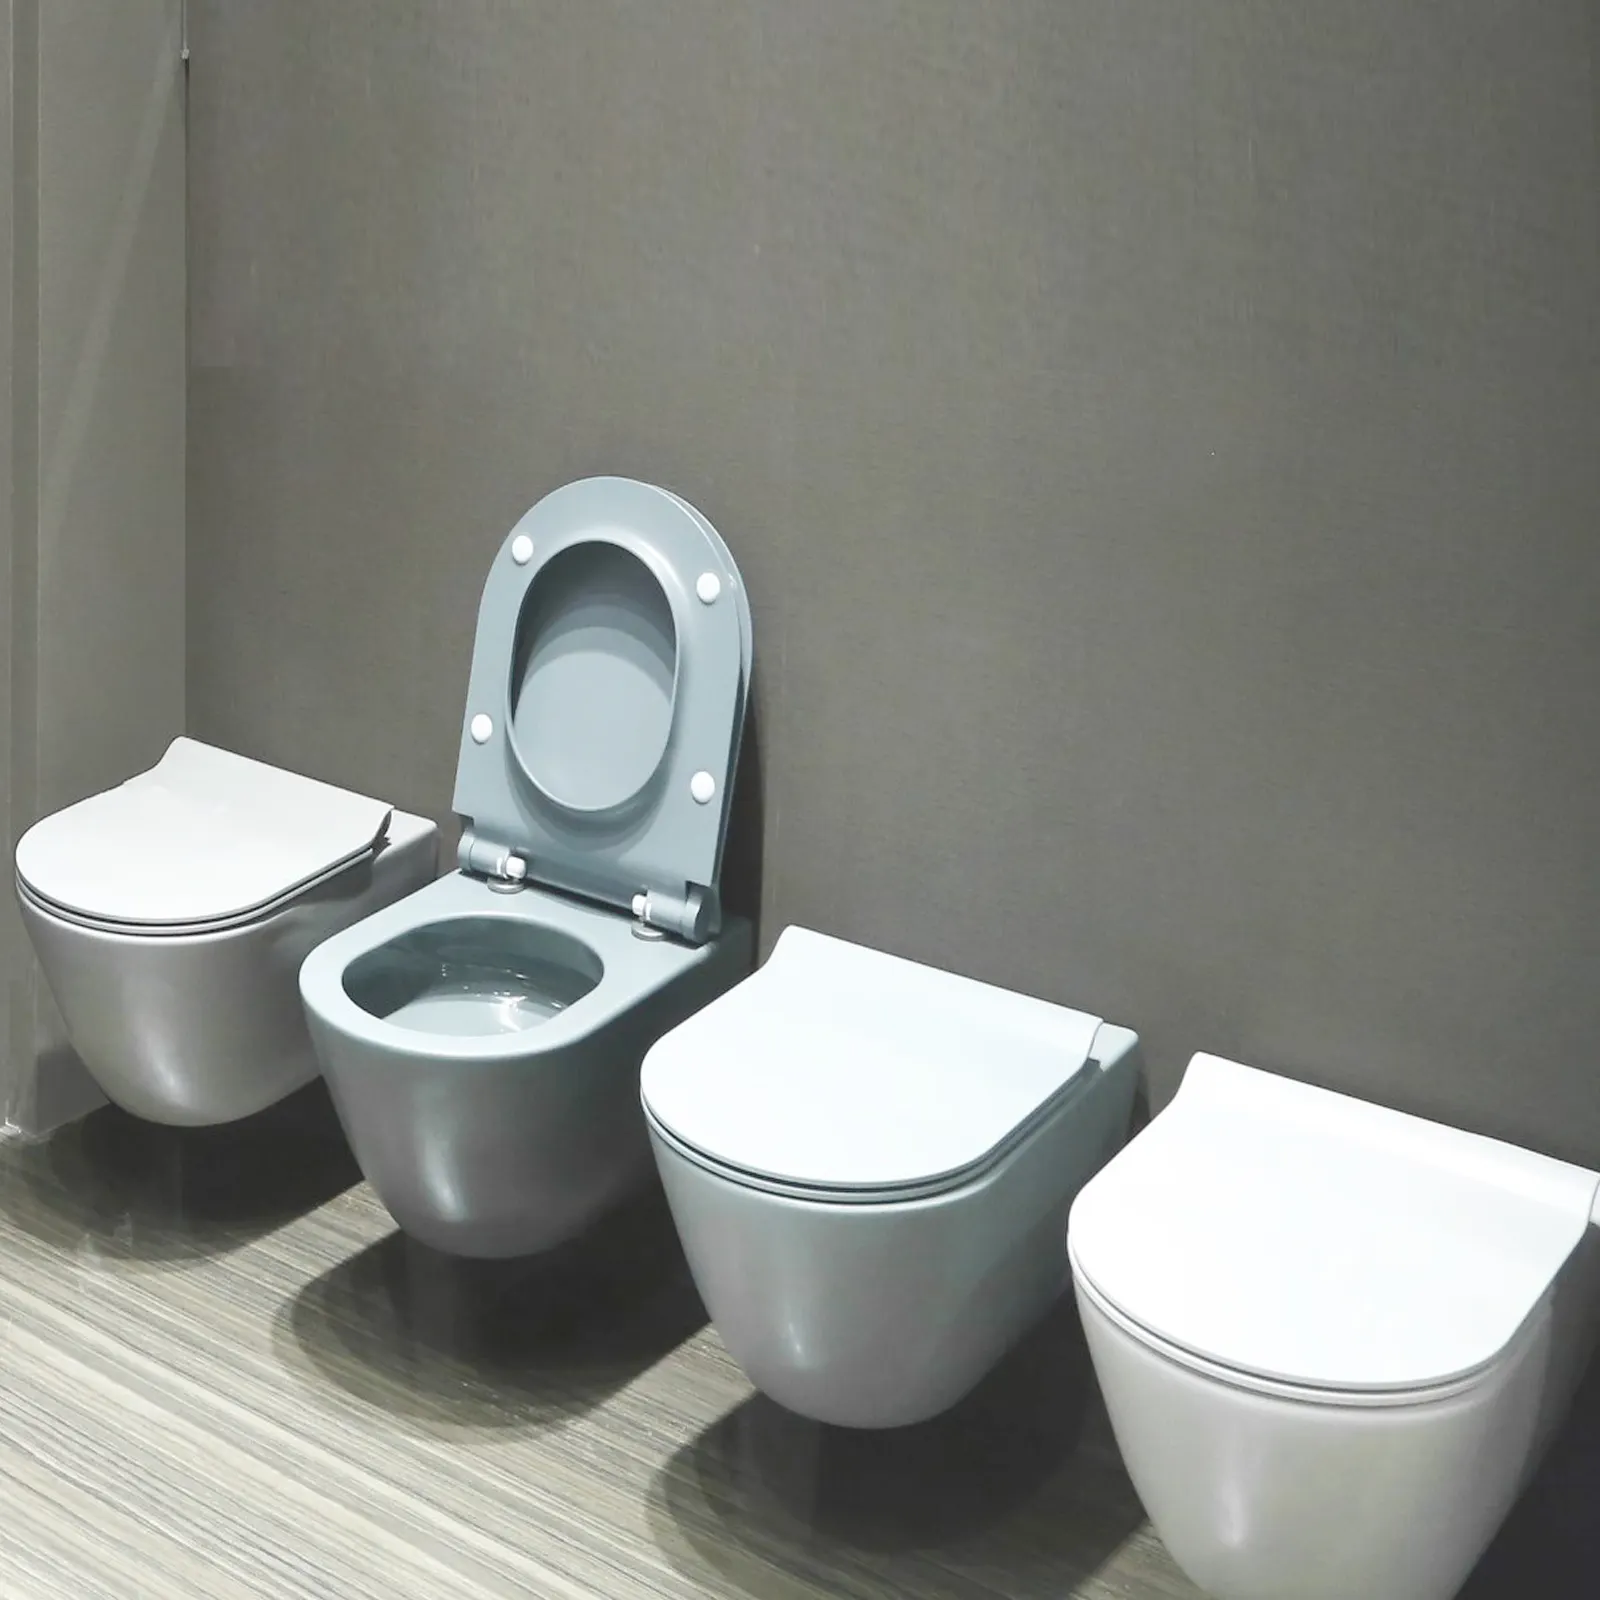 중국 위생 용품 화장실 터보 플러시 벽 교수형 화장실 숨겨진 수조 화장실 화장실 믹스 비데 지하철 지팡이 옷장